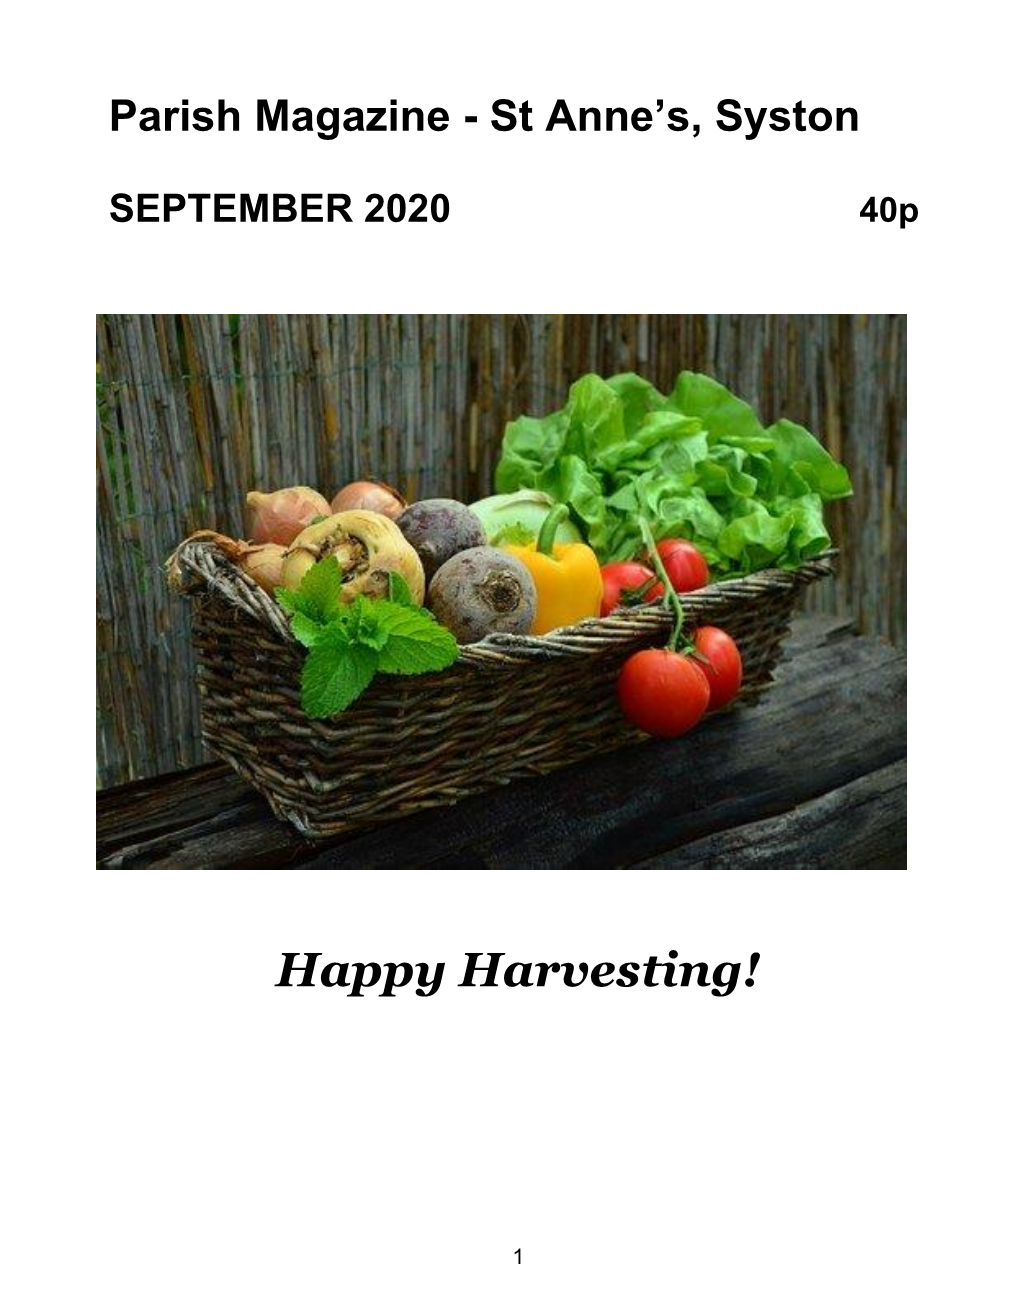 Happy Harvesting!